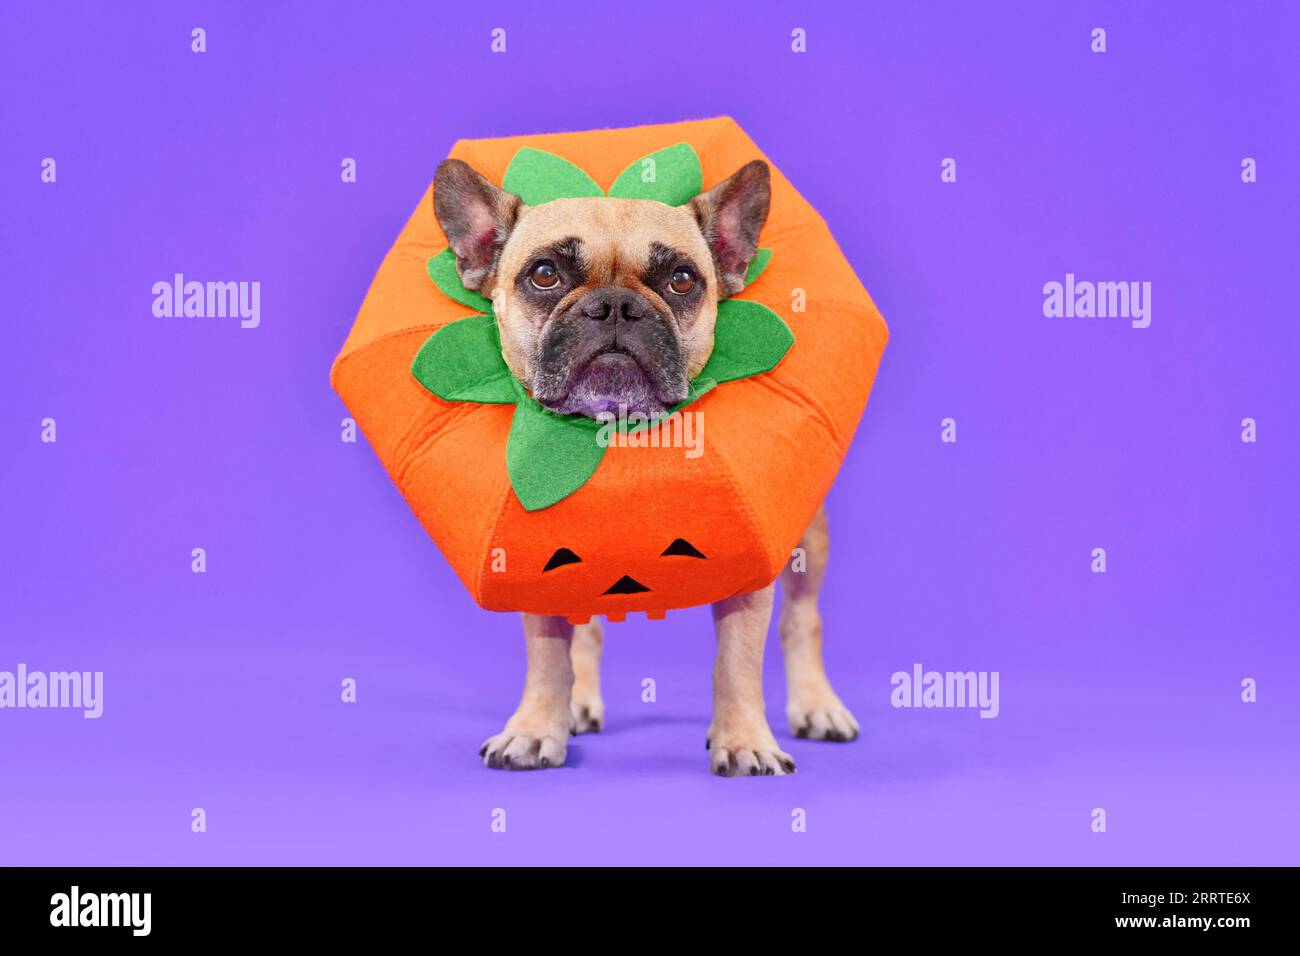 Chien Bulldog français habillé avec costume drôle de citrouille Halloween en fornt de fond violet Banque D'Images